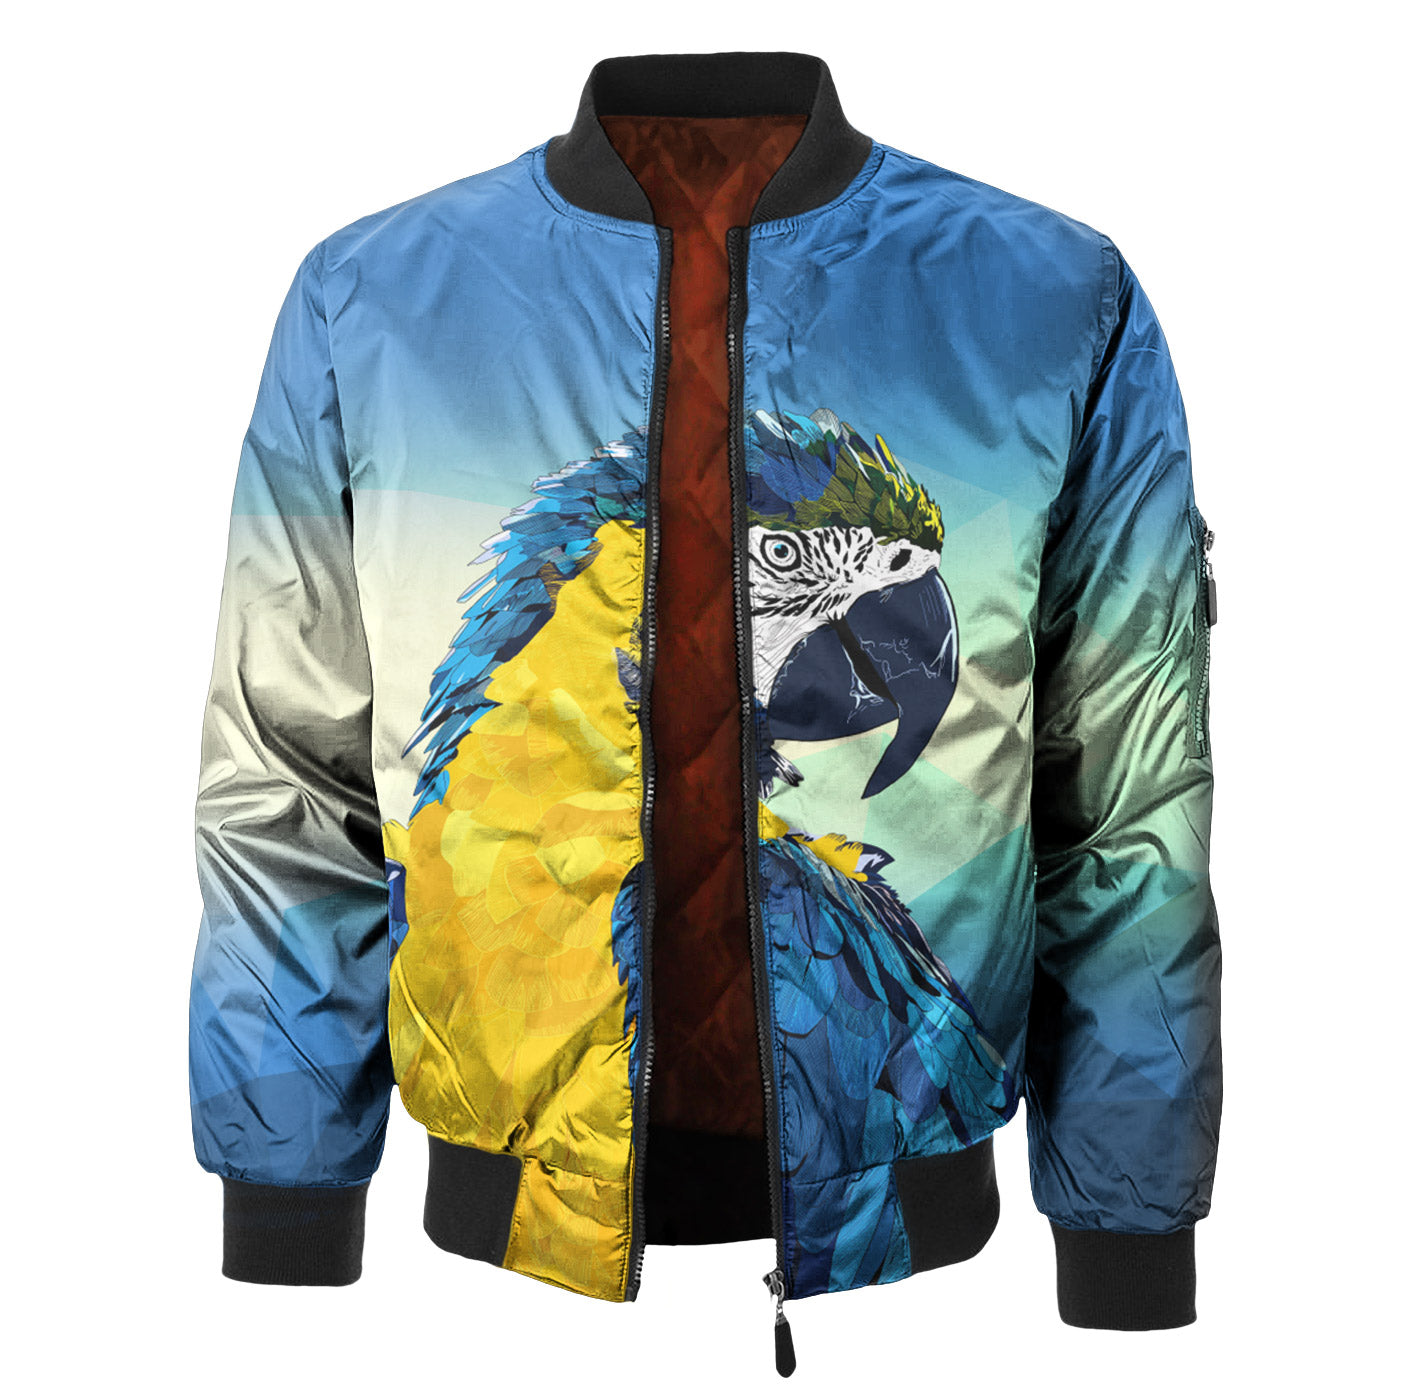 Macaw Bomber Jacket